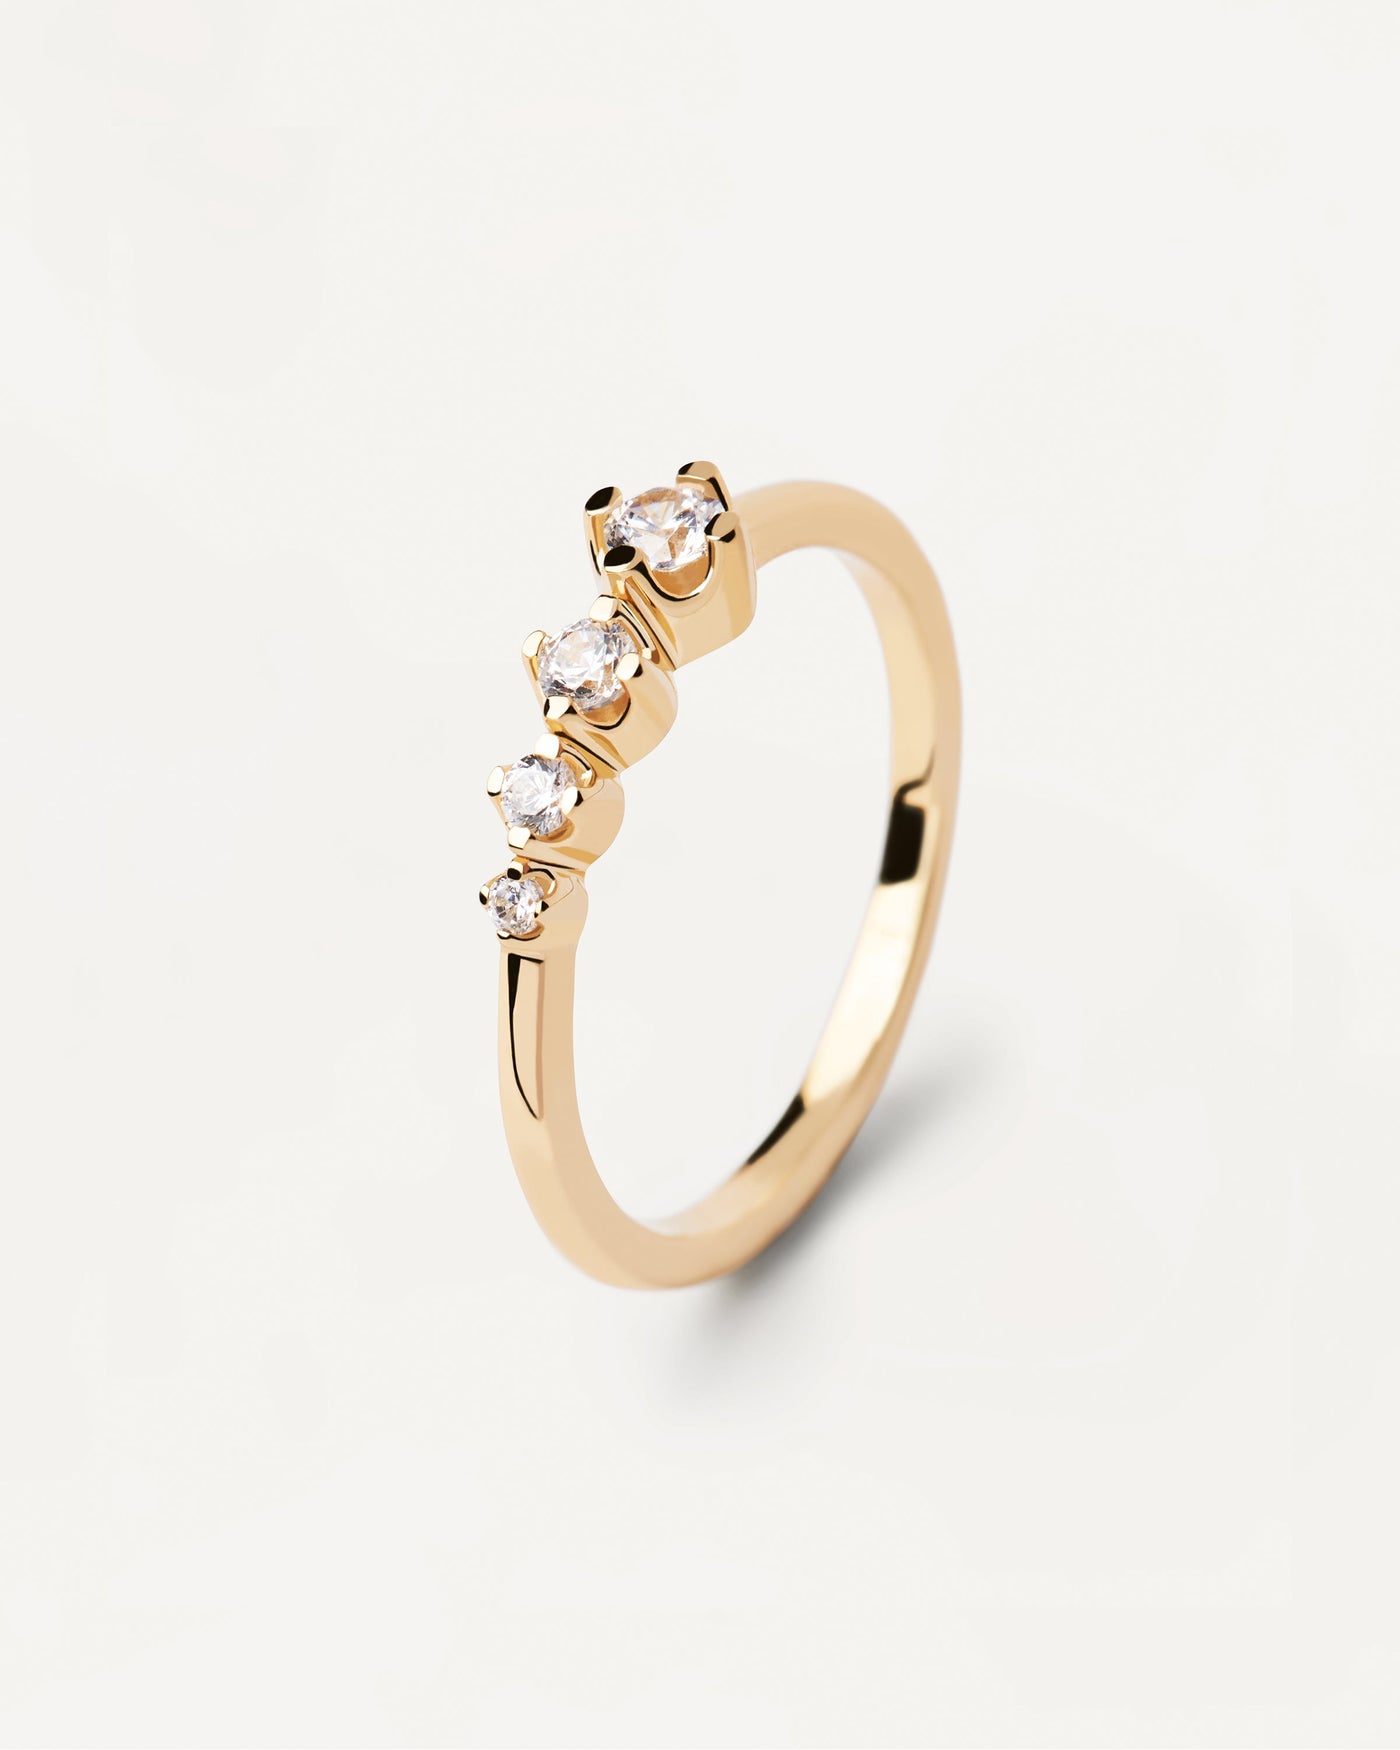 Spark Ring. Ring aus vergoldetem Silber mit 4 funkelnden weißen Zirkonias. Erhalten Sie die neuesten Produkte von PDPAOLA. Geben Sie Ihre Bestellung sicher auf und erhalten Sie diesen Bestseller.